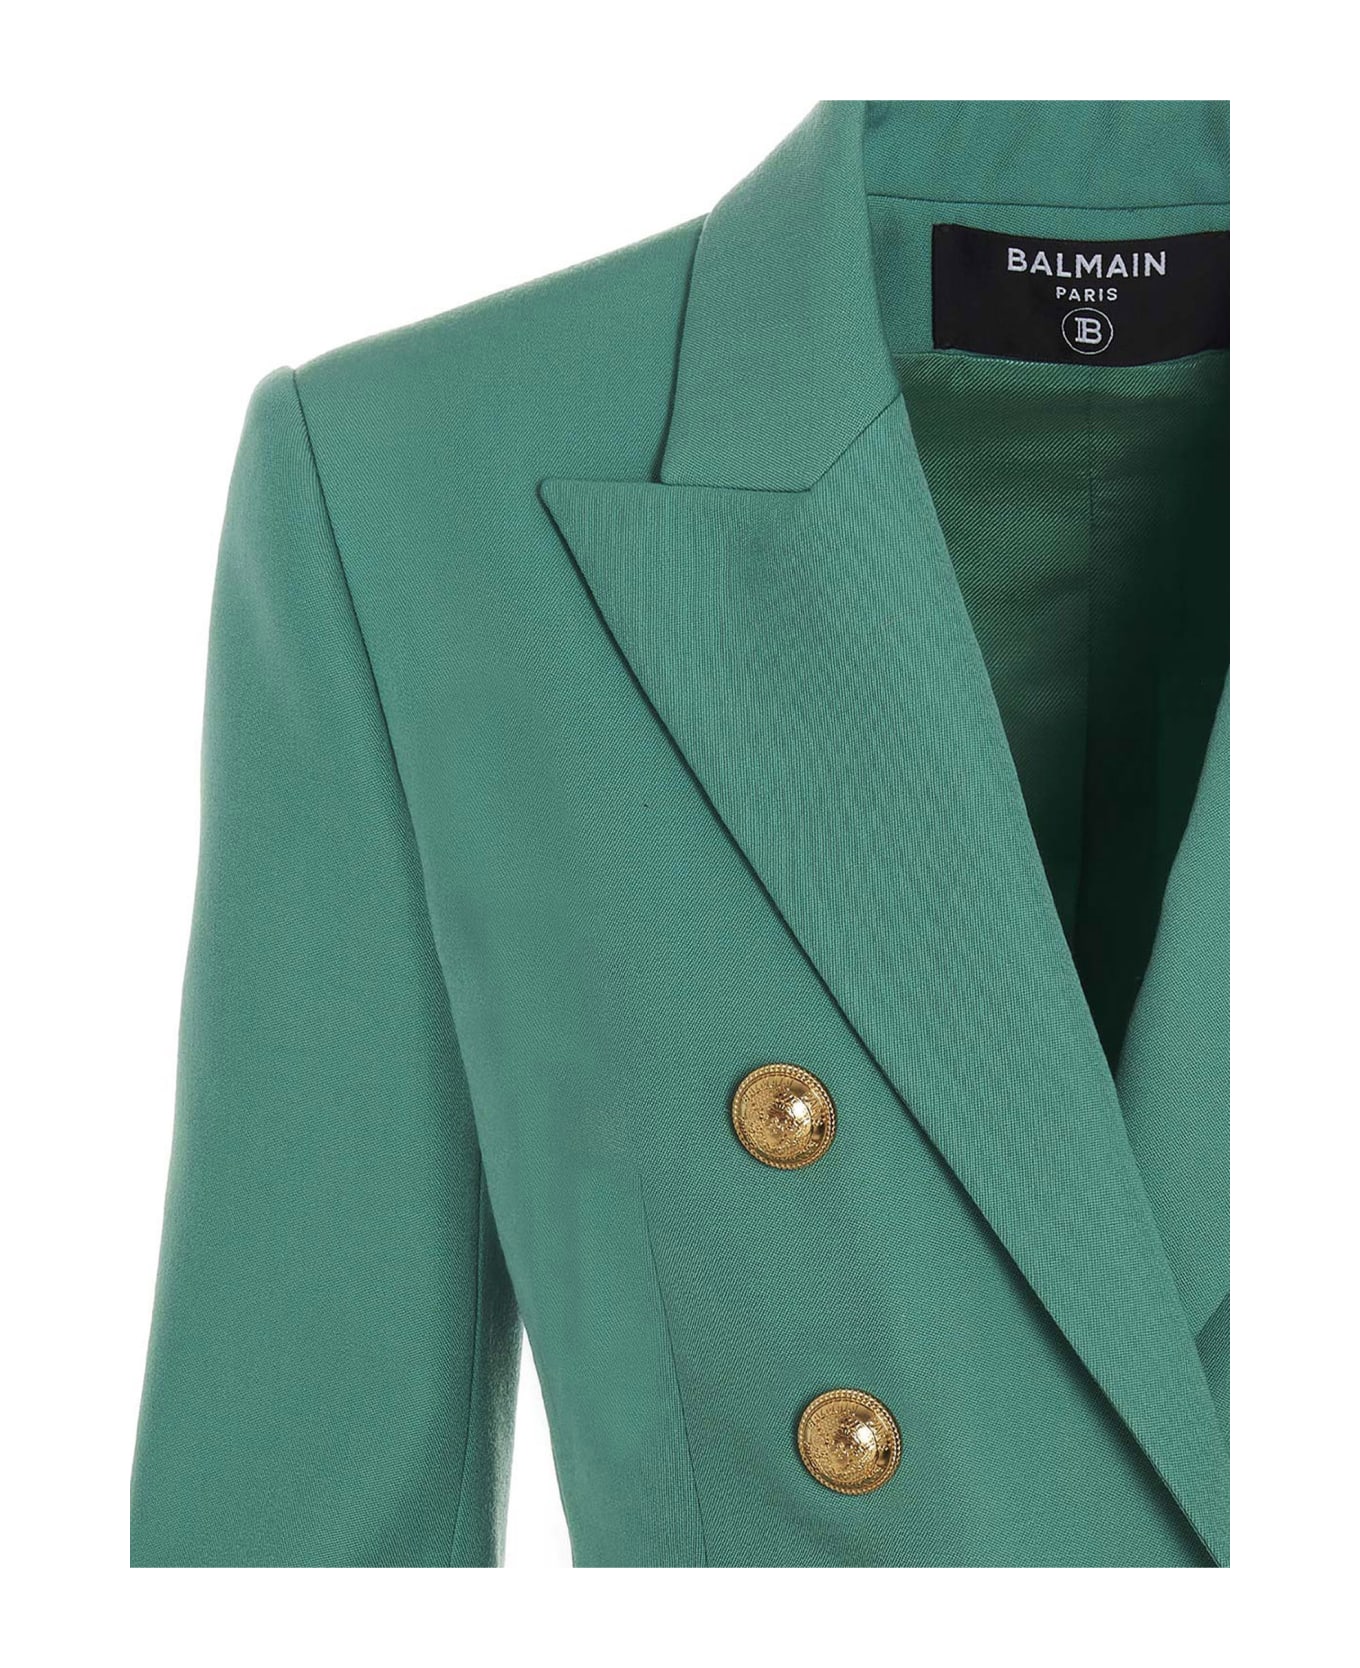 Balmain Double Breast Wool Blazer Jacket - Verde ブレザー